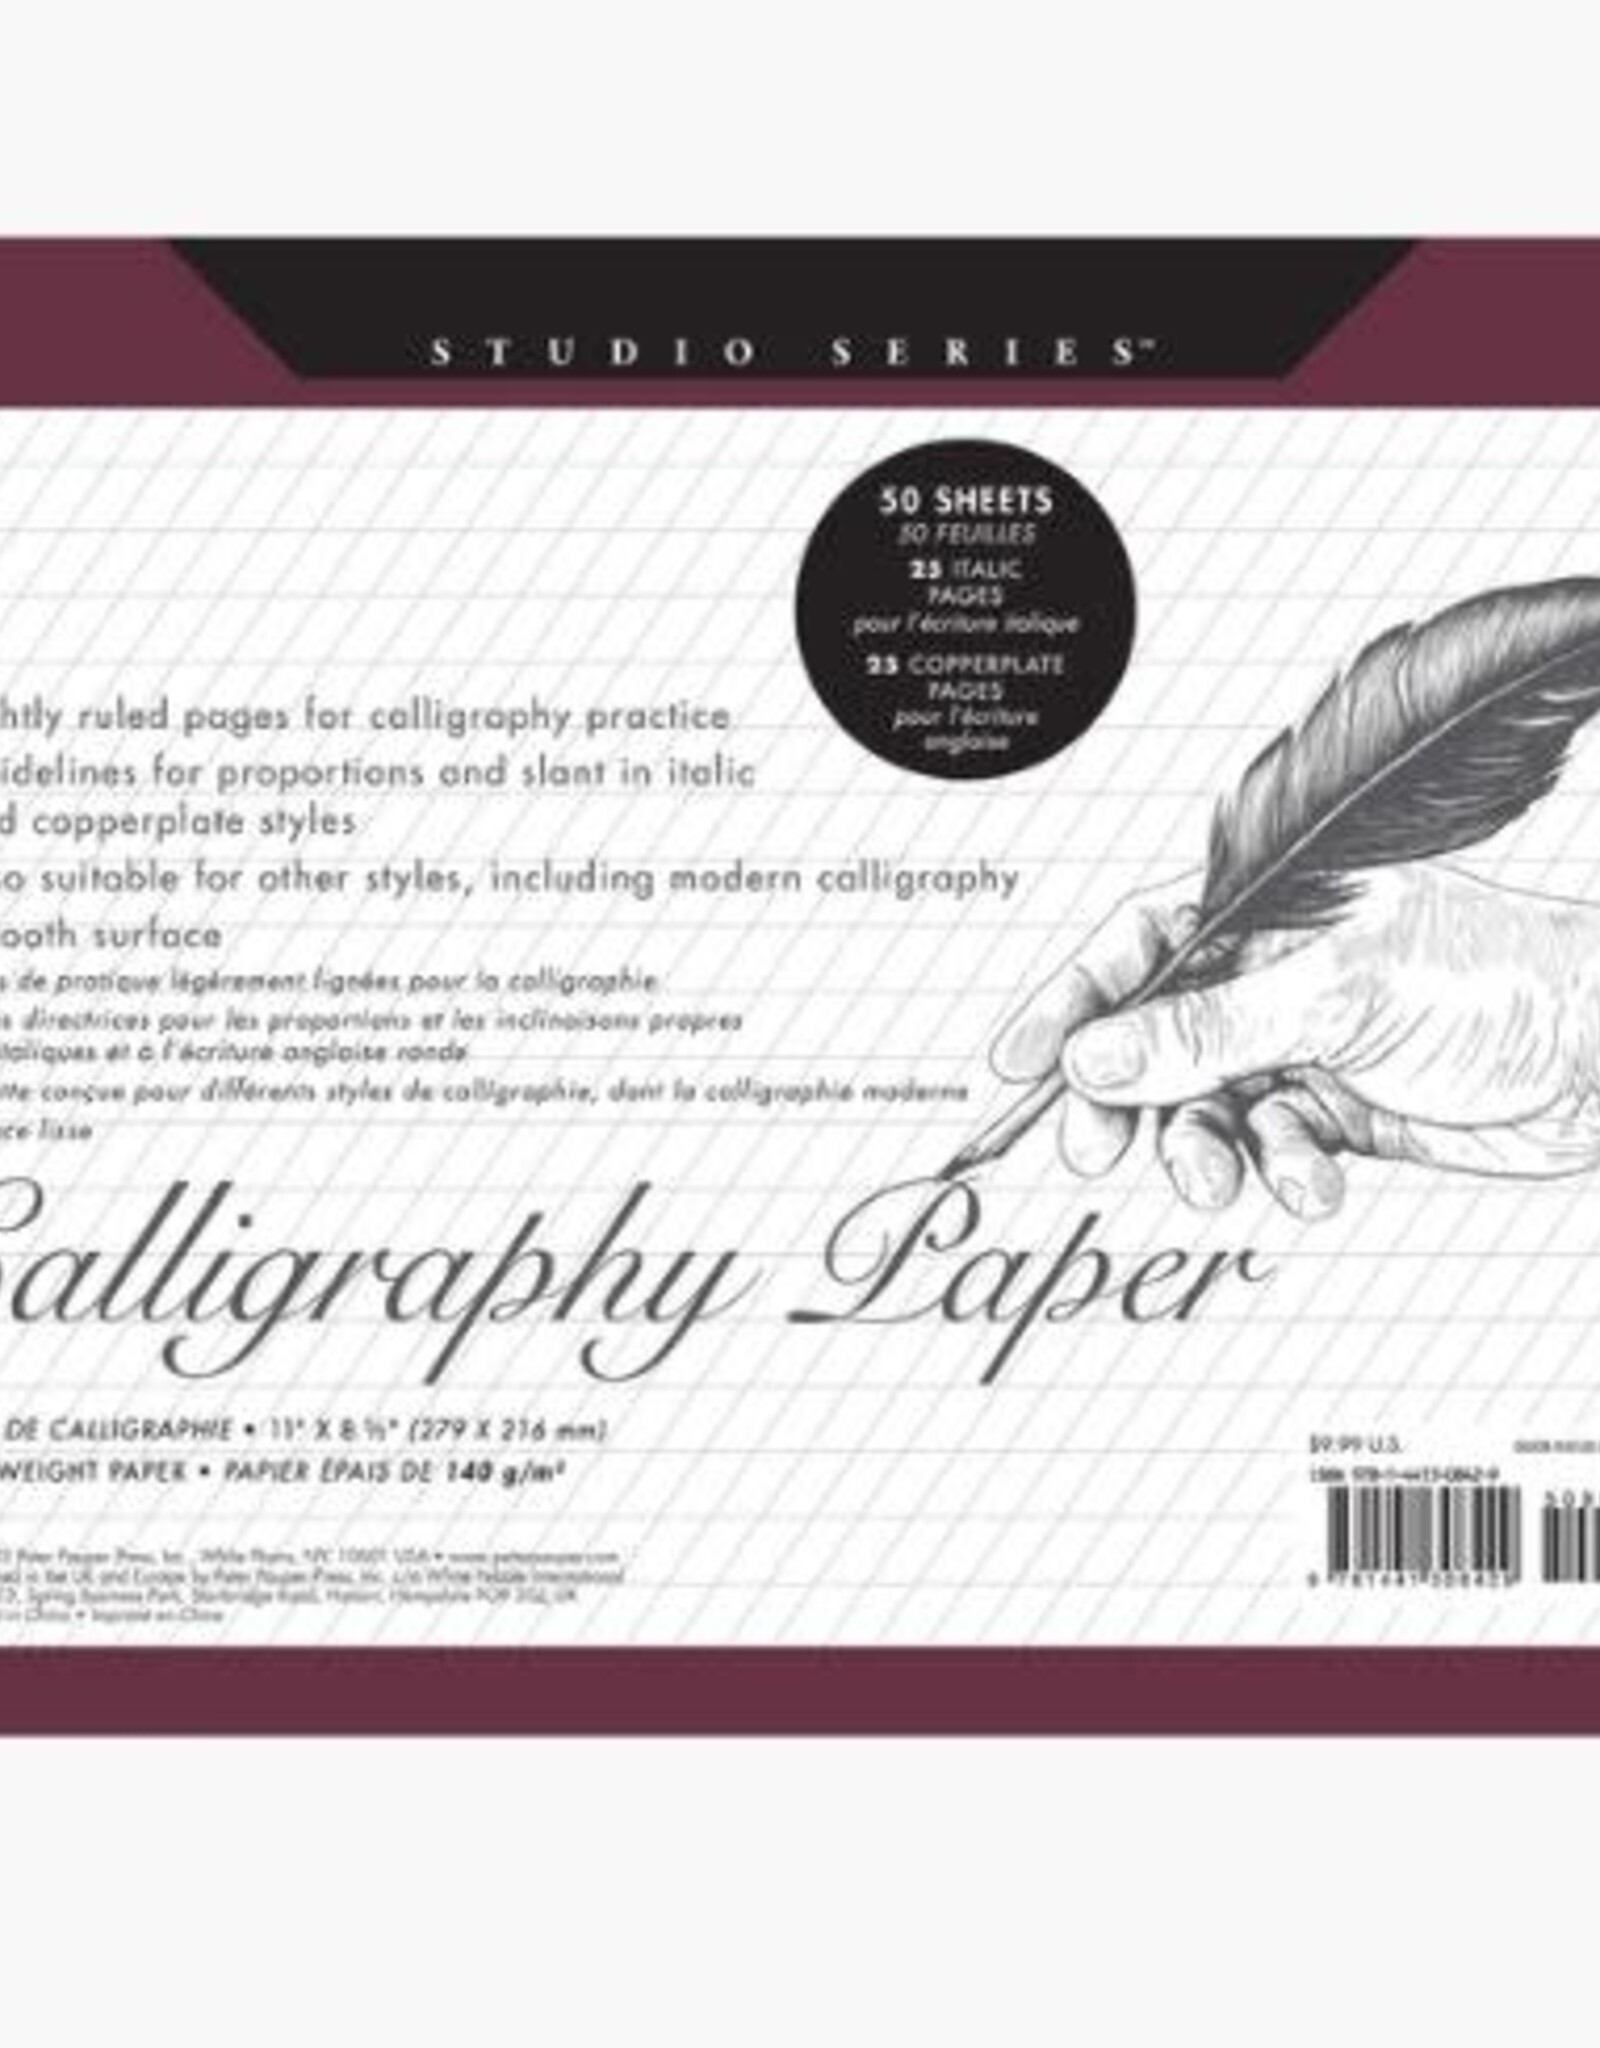 Peter Pauper Press STUDIO SERIES CALLIGRAPHY PAPER PAD